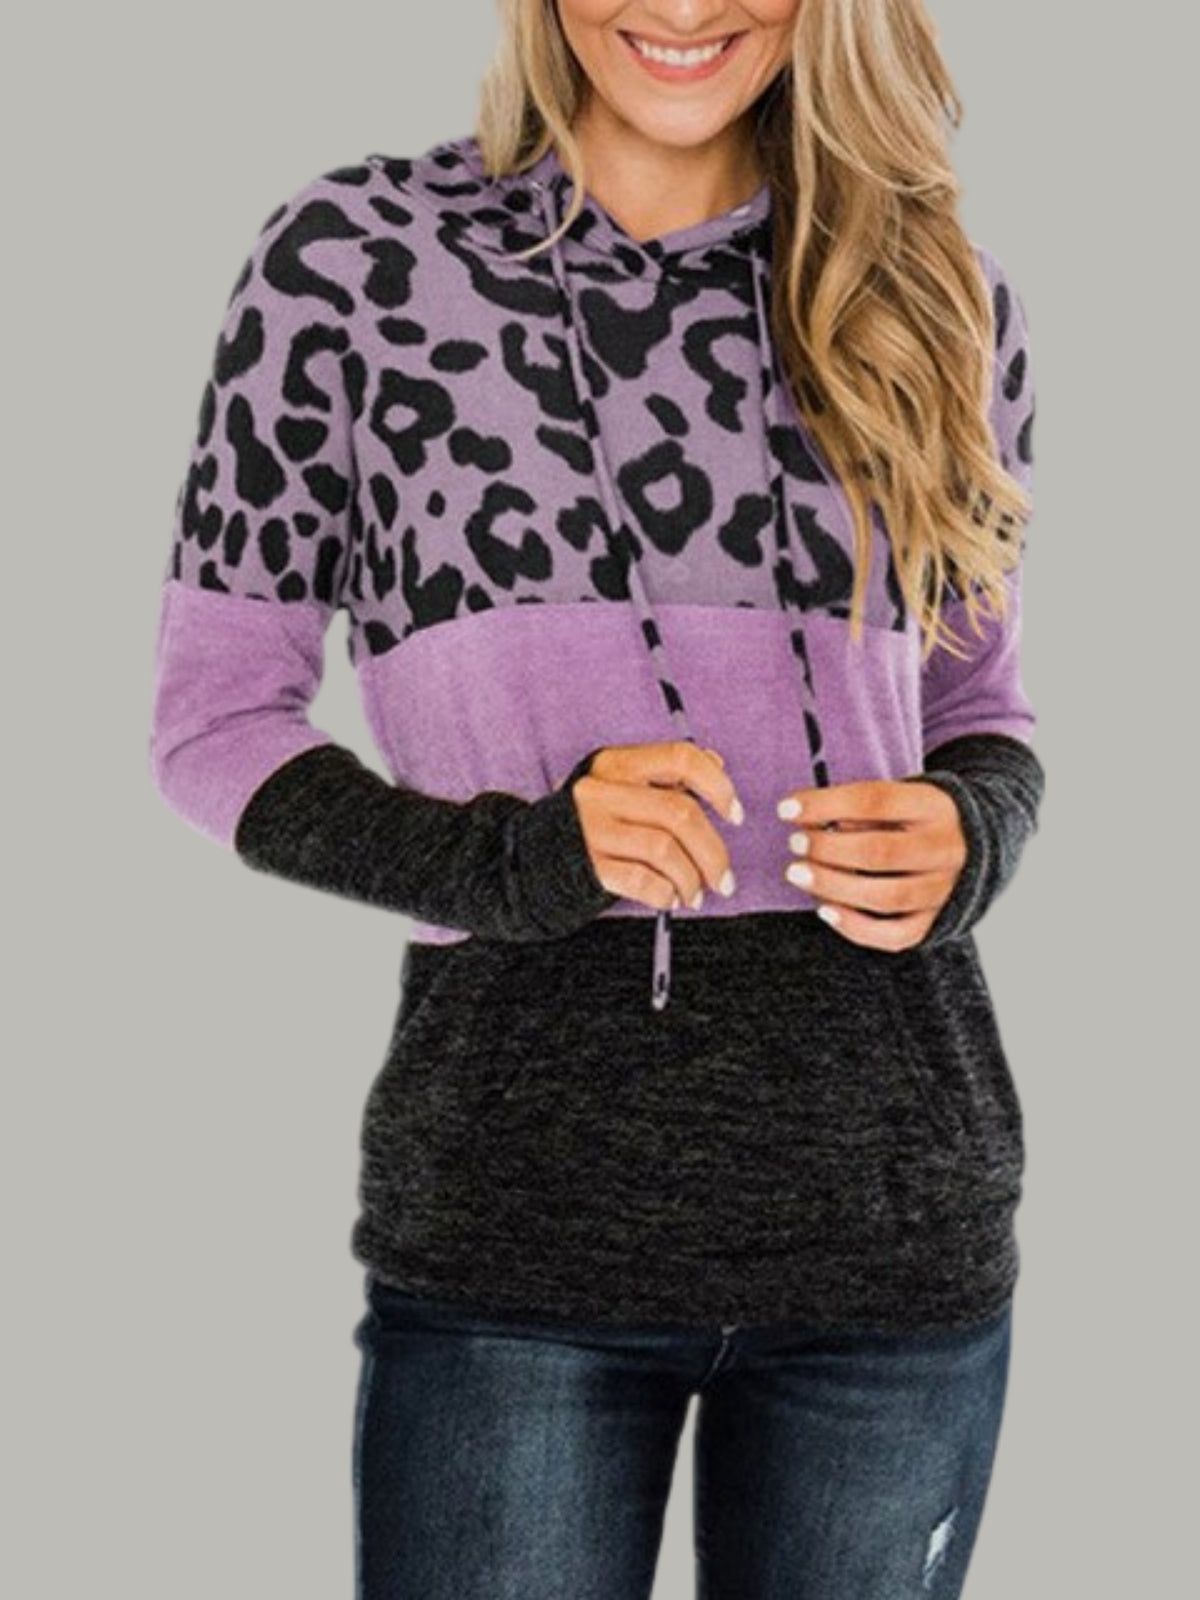 Women's Leopard Color Block Hooded Top